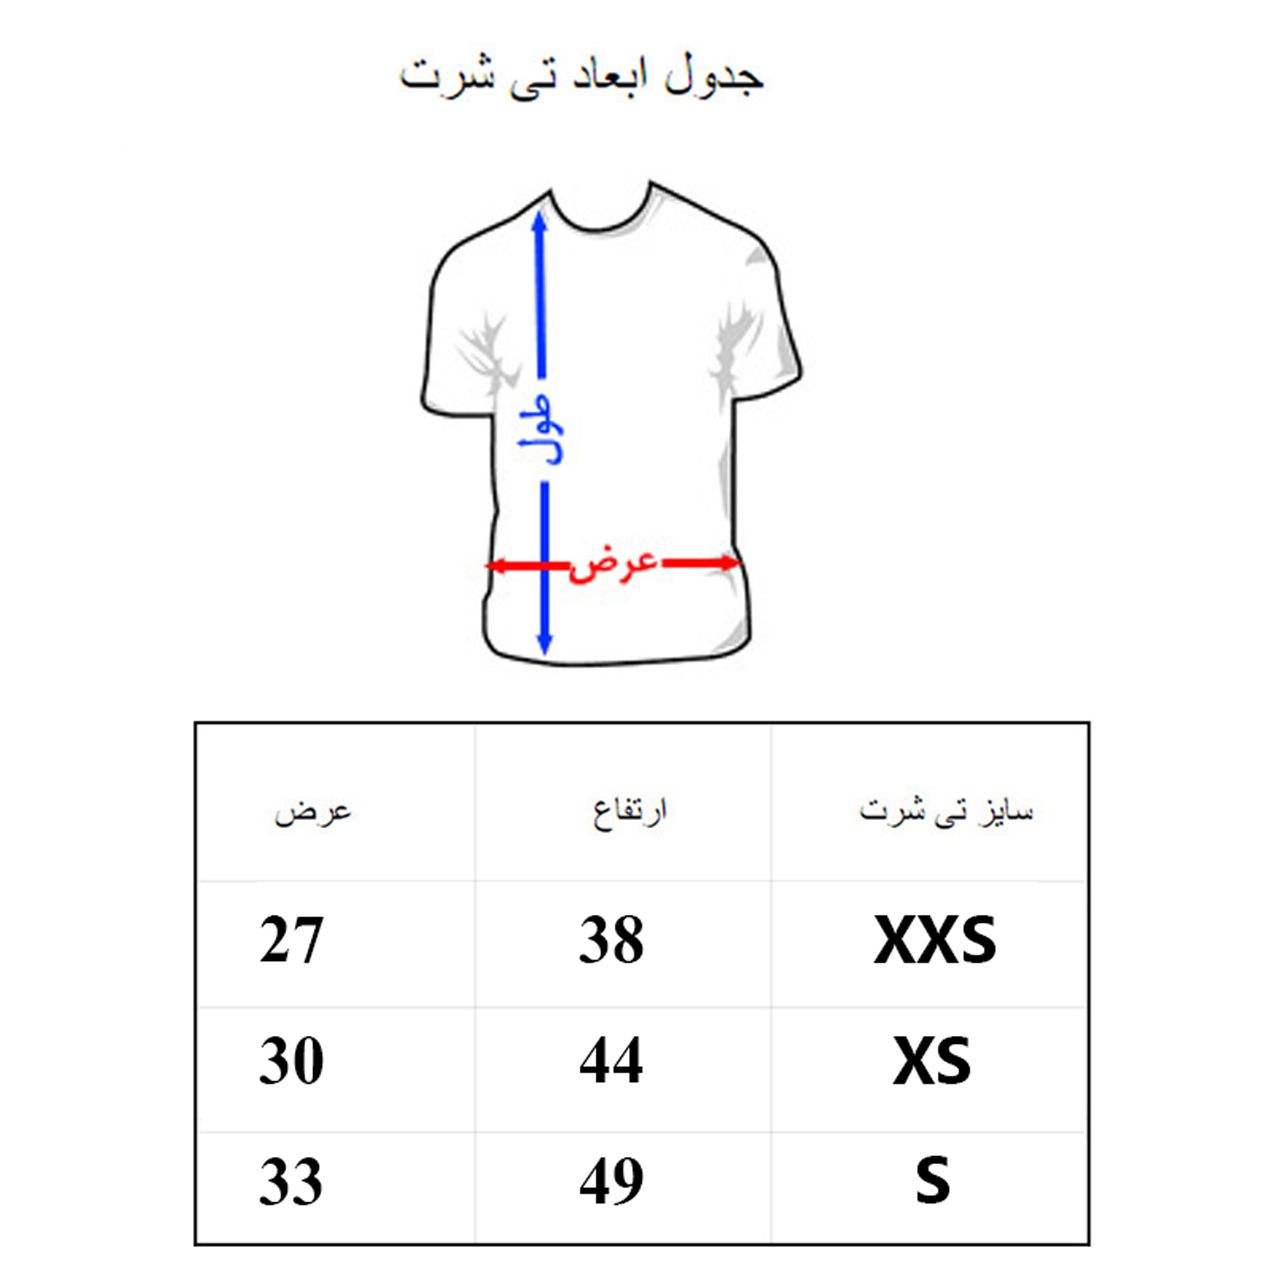 تی شرت آستین کوتاه بچگانه به رسم مدل سیمپسون ها کد 1131 -  - 2